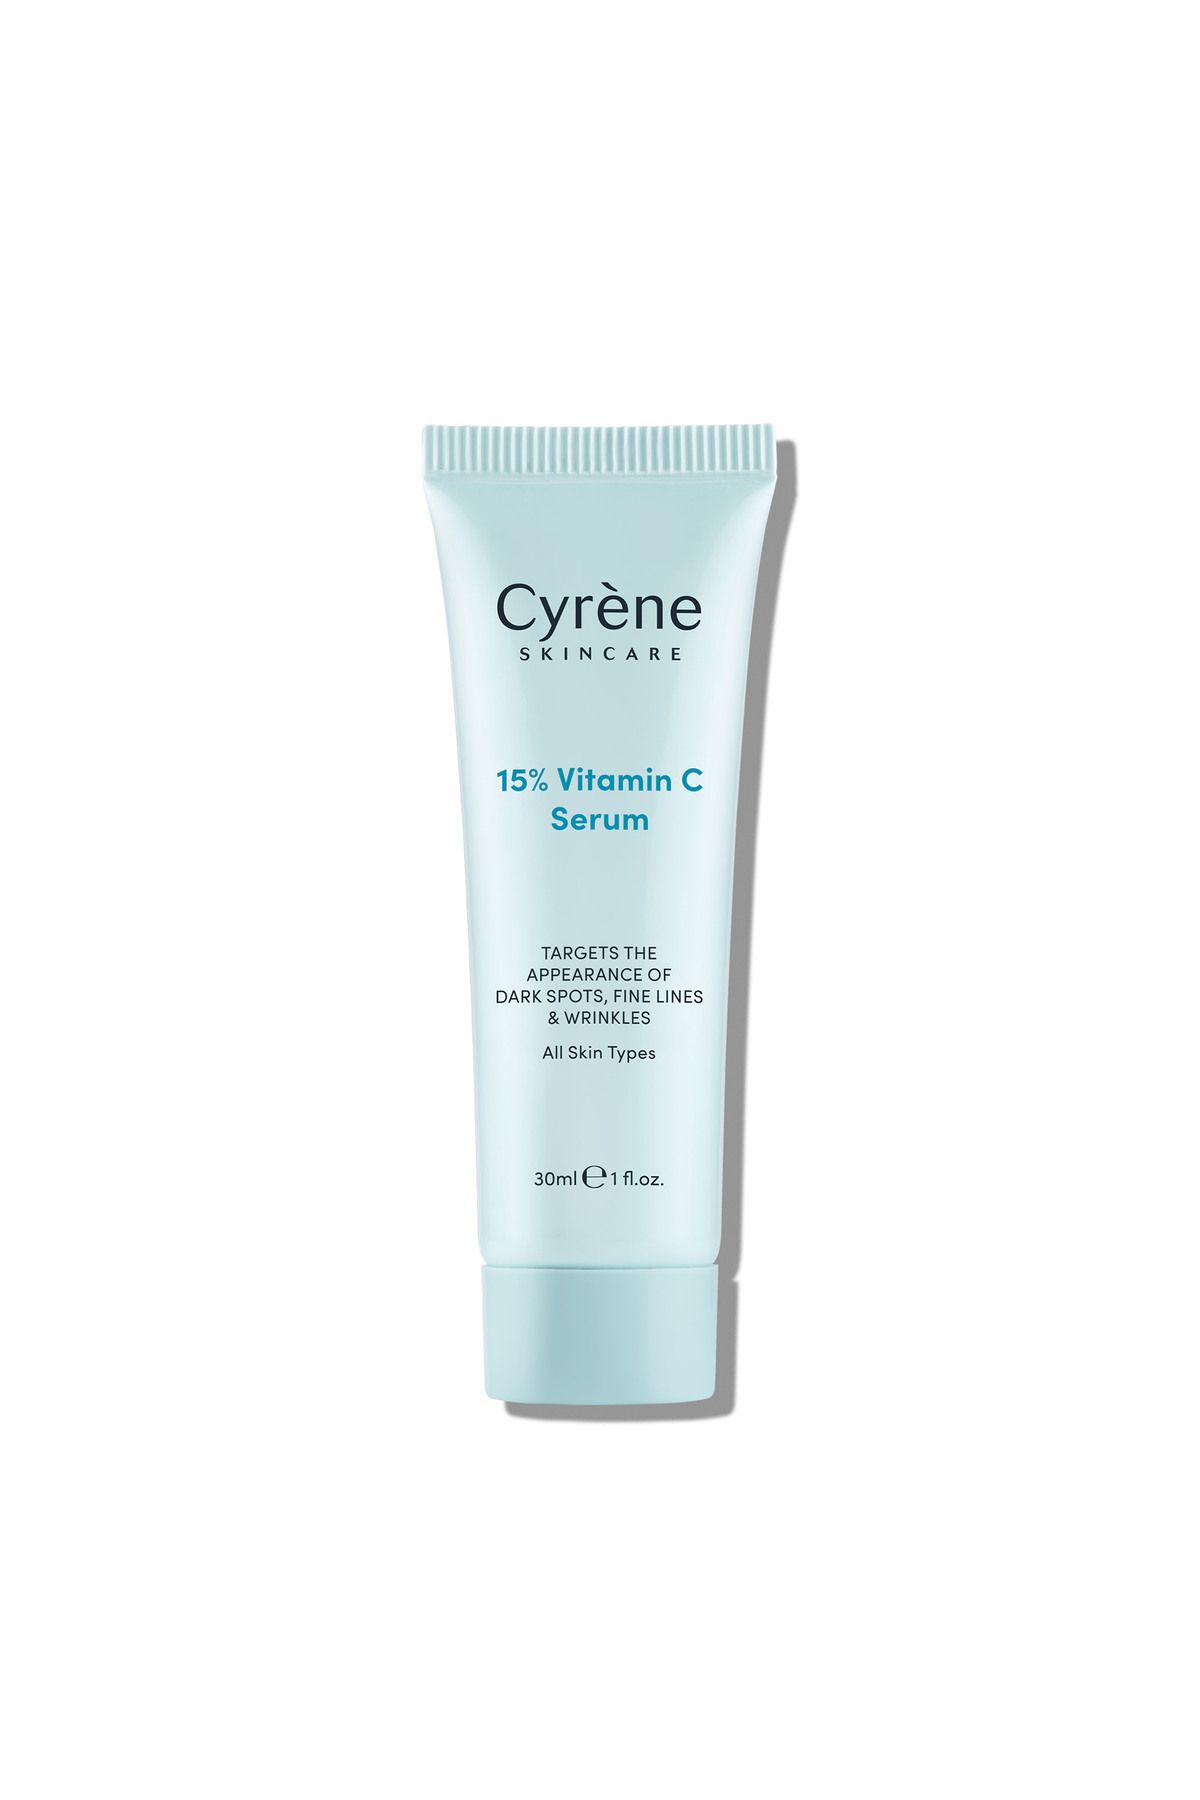 Cyrene 15% Vitamin C Serum.